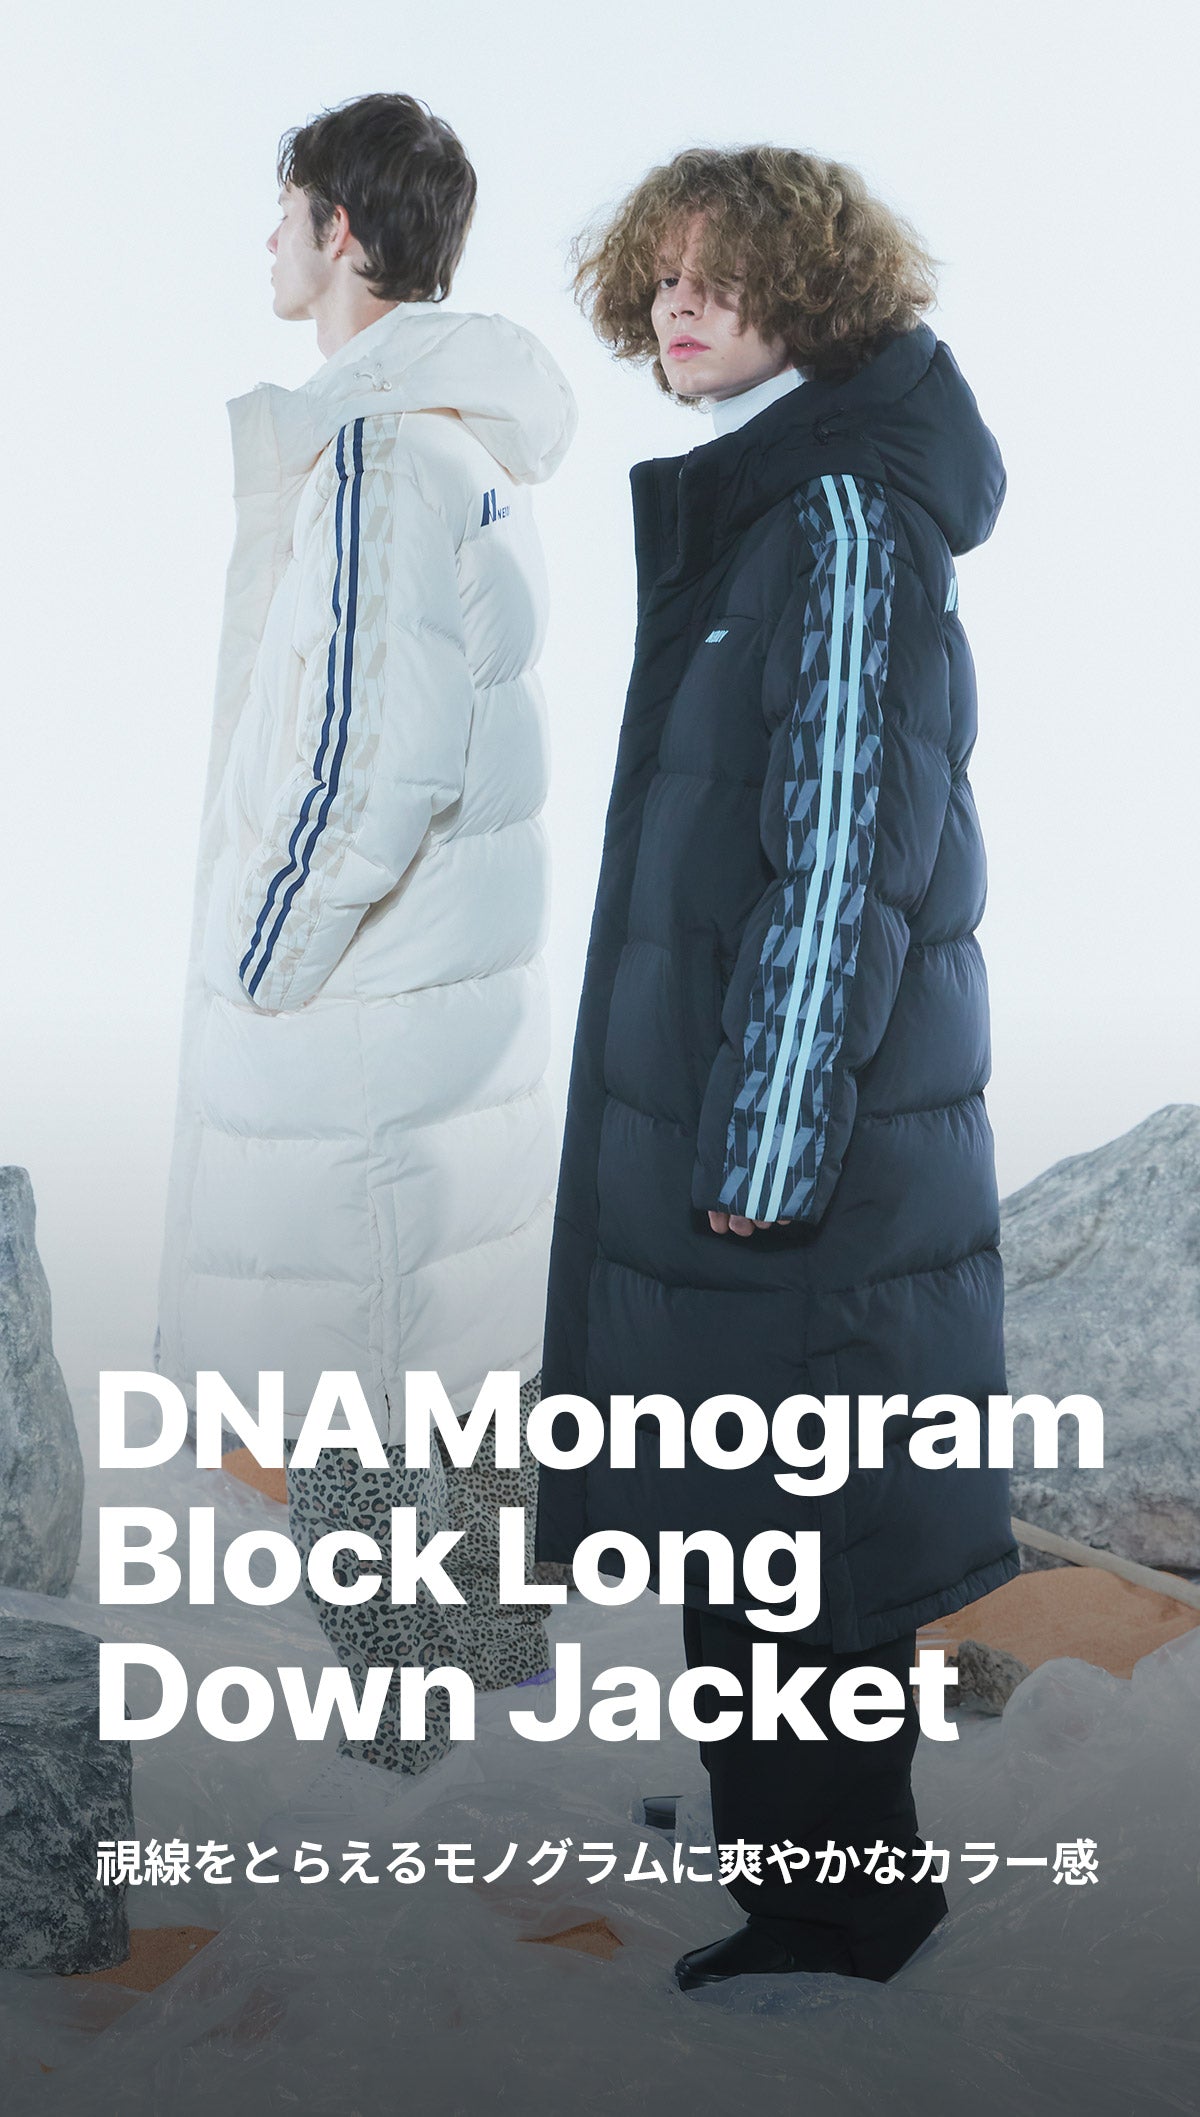 【セール】NERDY DNAモノグラムブロックロングダウンジャケット